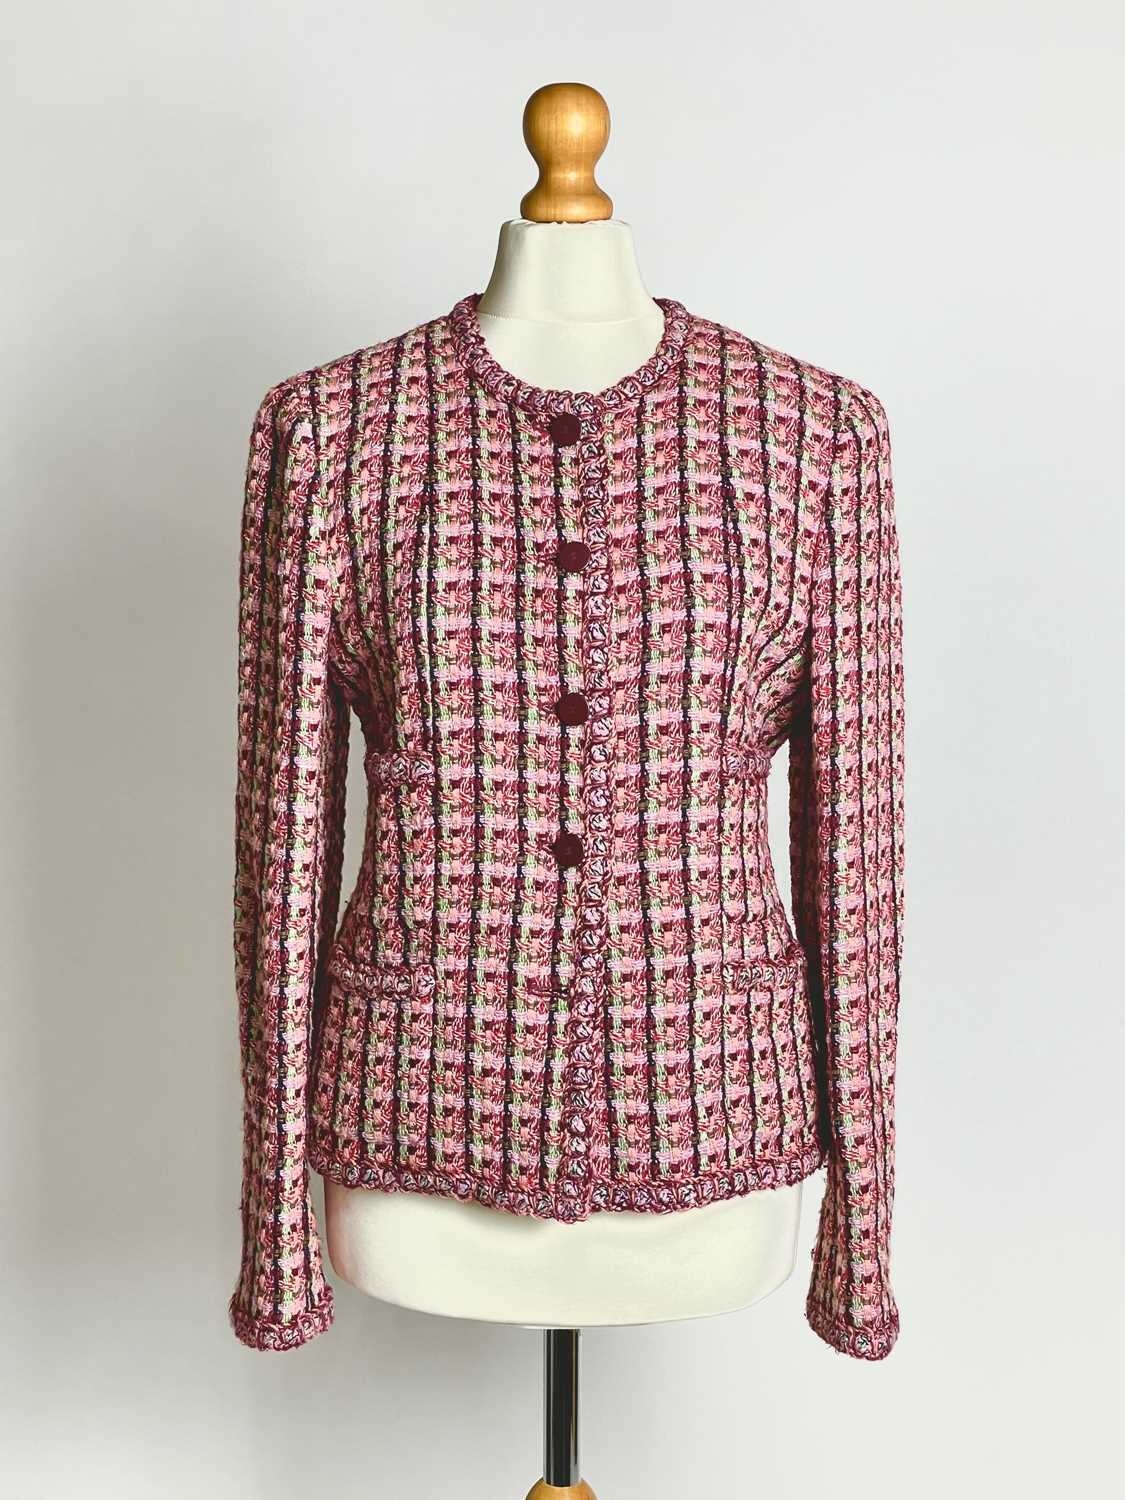 Lot 854 - A Chanel tweed jacket